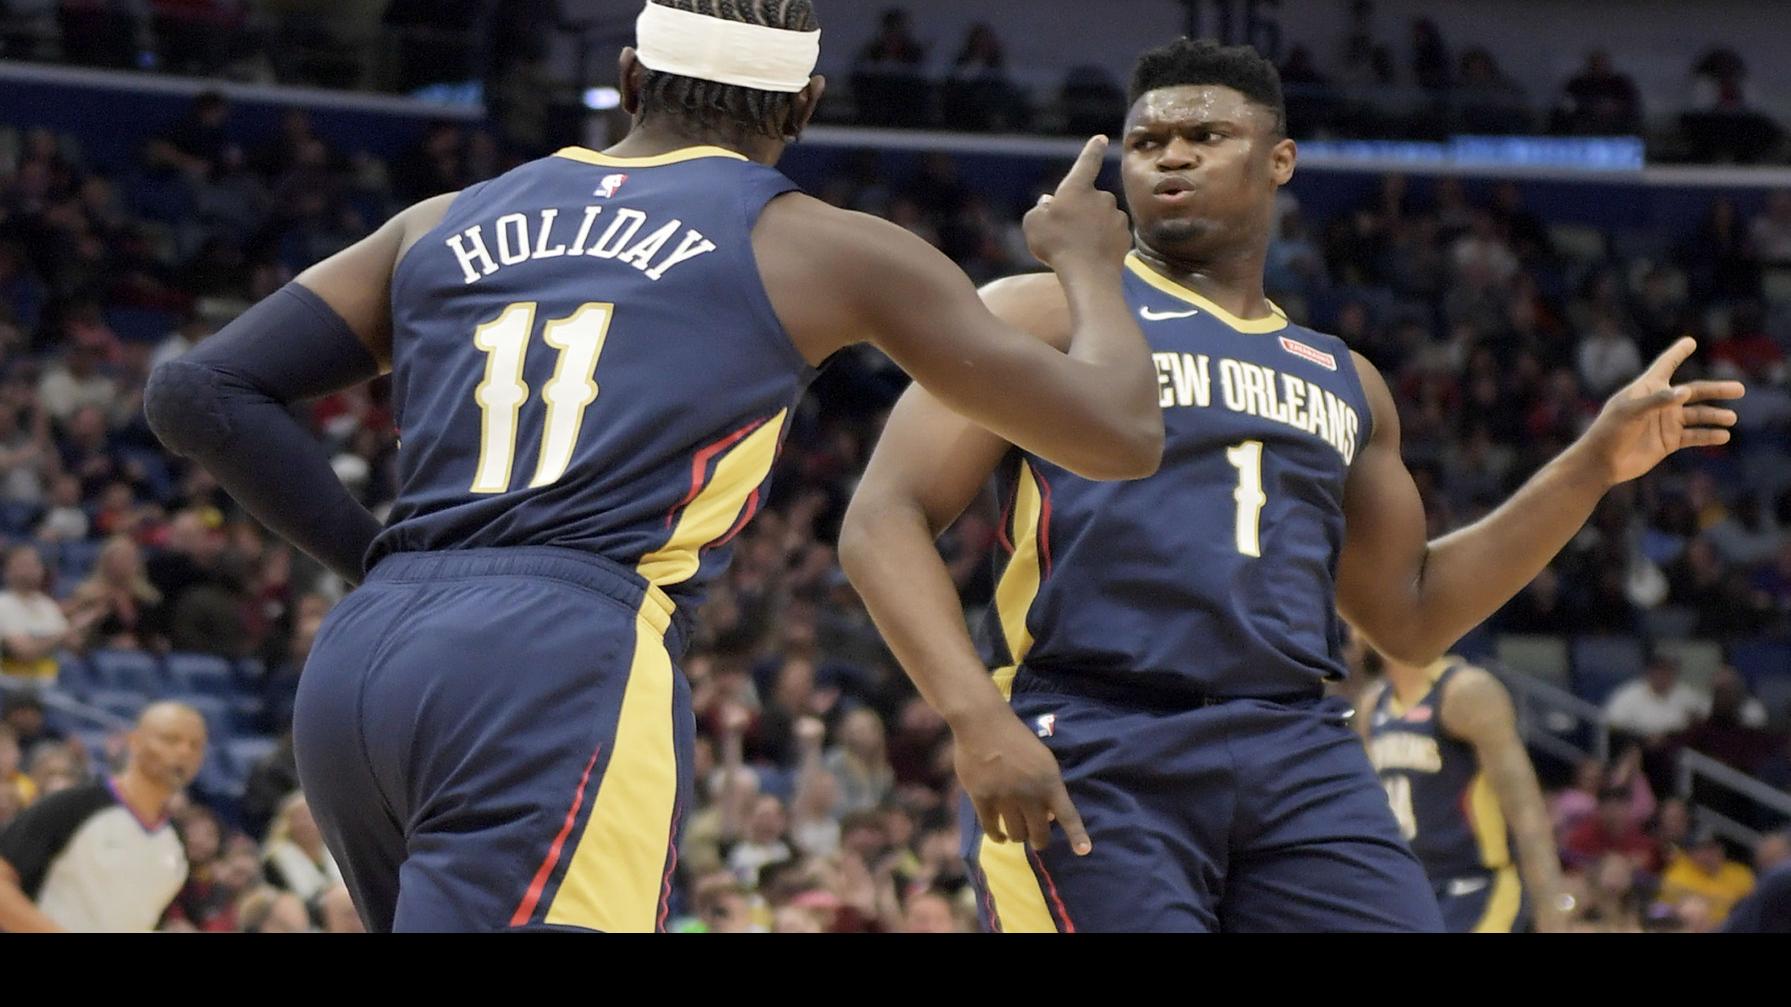 PHOTOS: Cavaliers vs. Pelicans, Jan. 16, 2023 – News-Herald